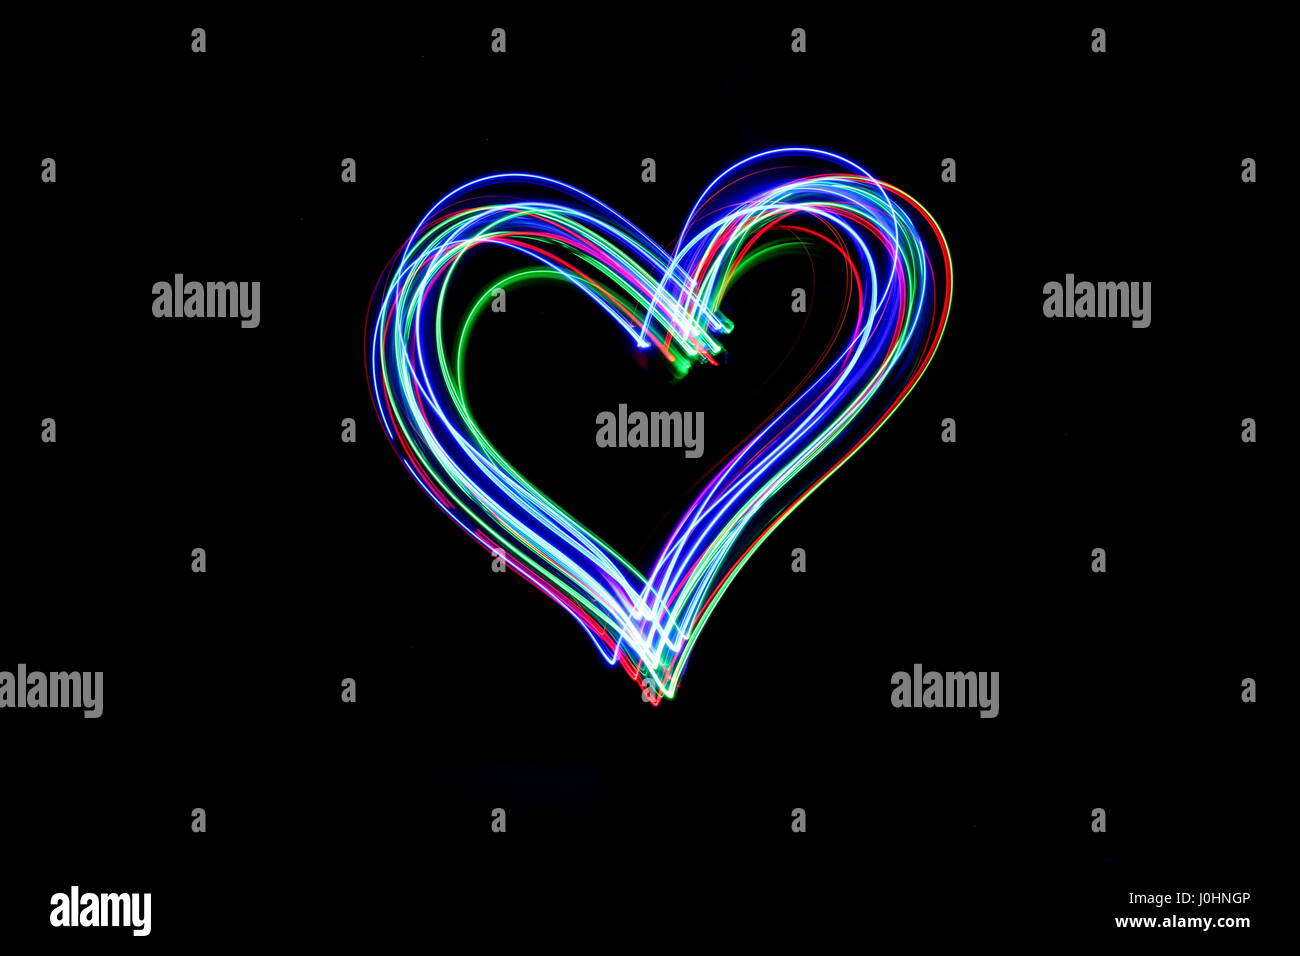 Licht Malerei Fotografie - lange Belichtung Foto von Lichterketten, in Form eines Herzens vor einem schwarzen Hintergrund. Neon abstract das Symbol. Stockfoto